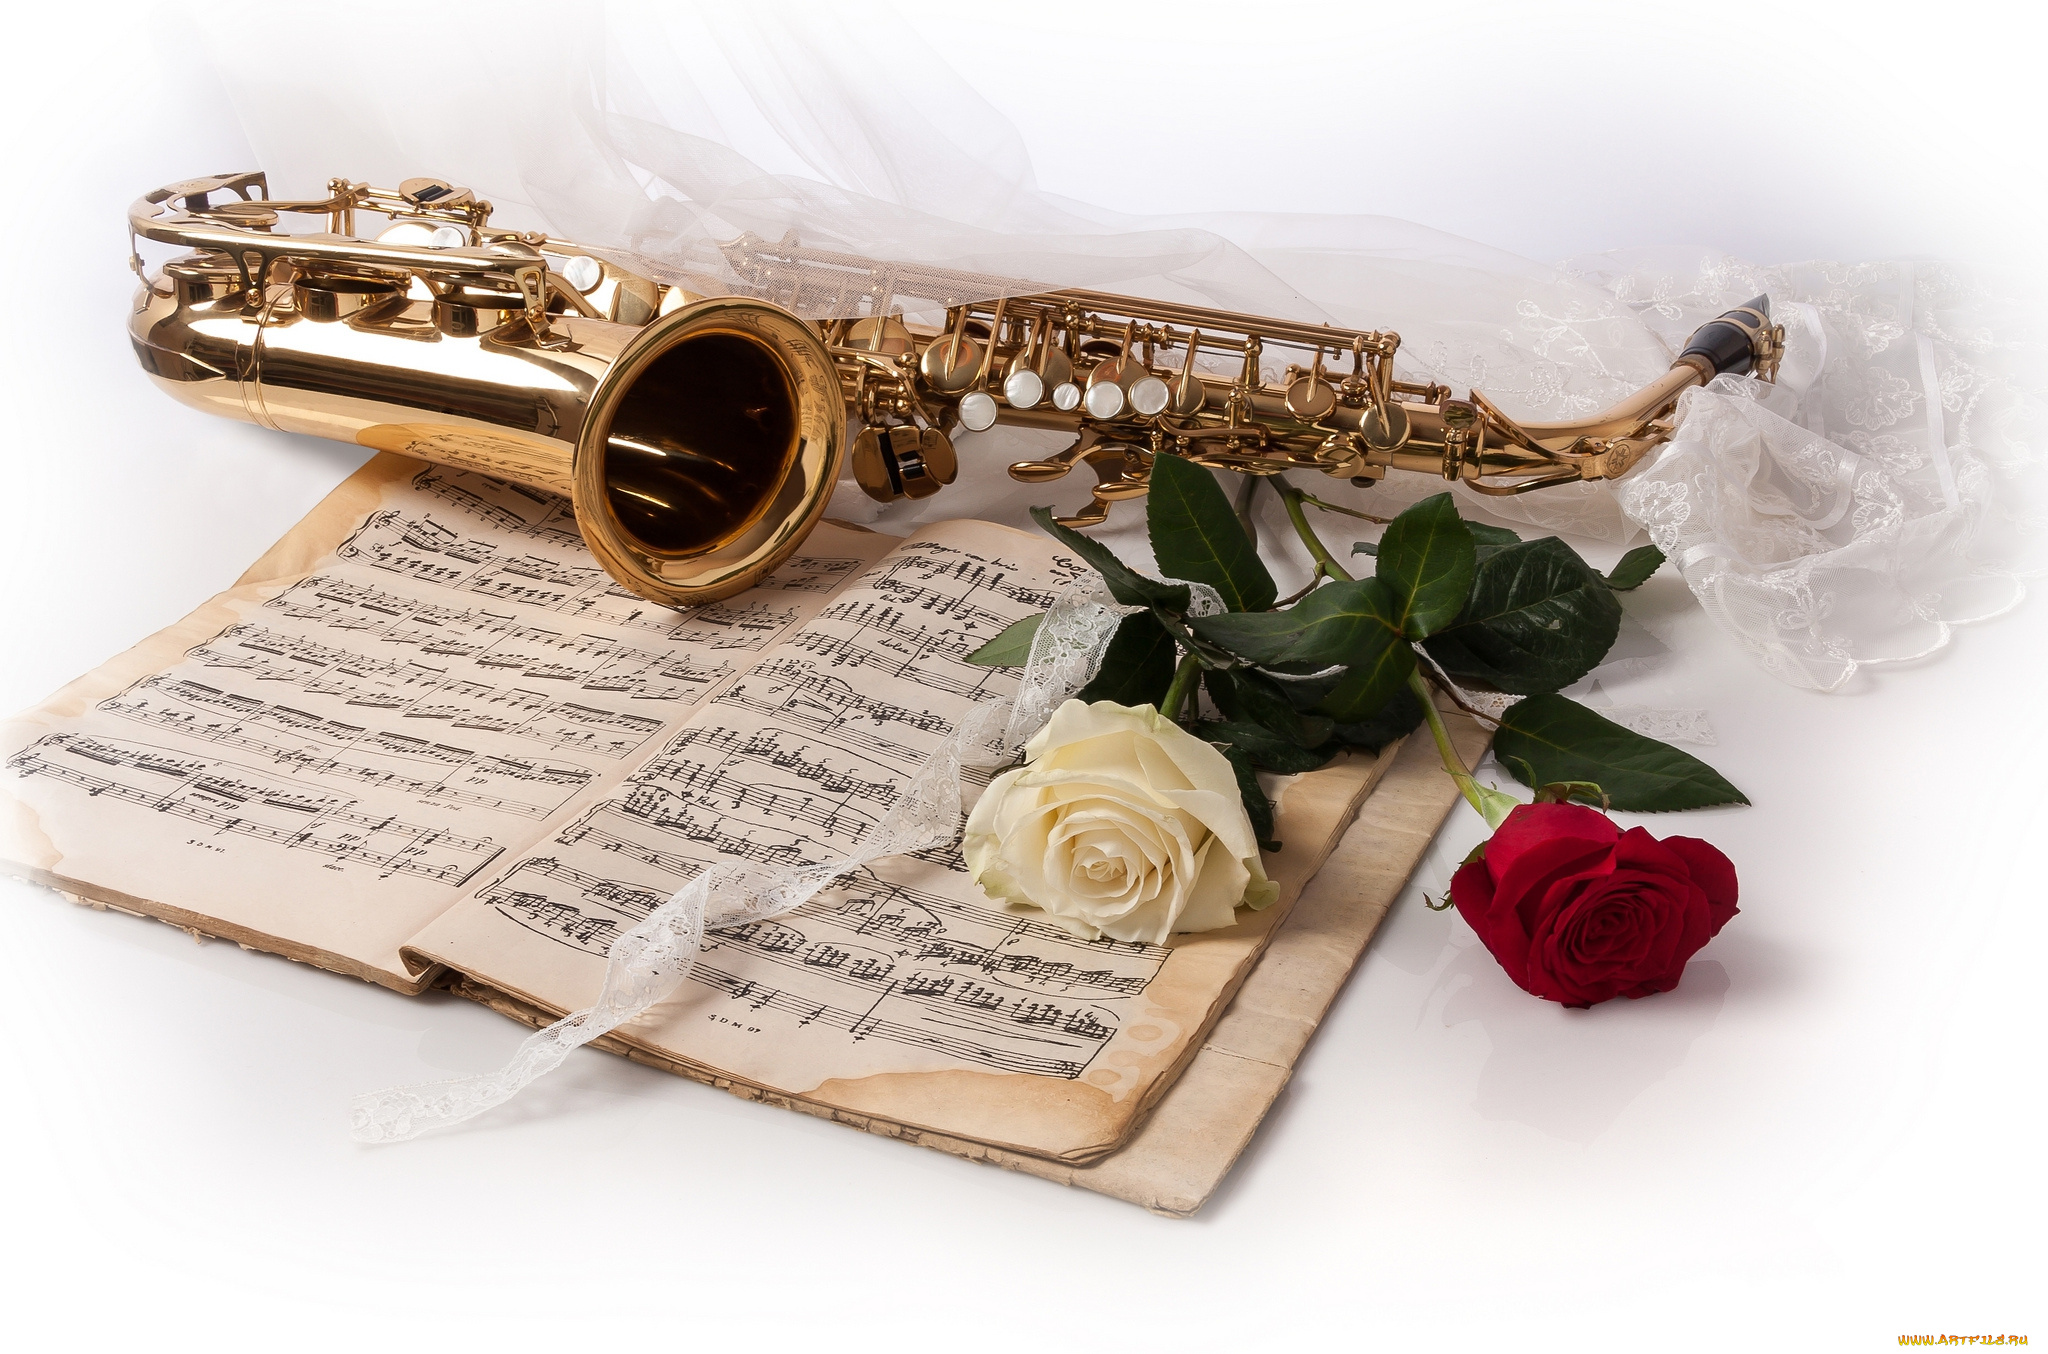 Учителю музыки на последний звонок. Музыкальные инструменты и цветы. Открытка музыканту. С днём рождения саксофонисту открытки. Цветы для музыканта.